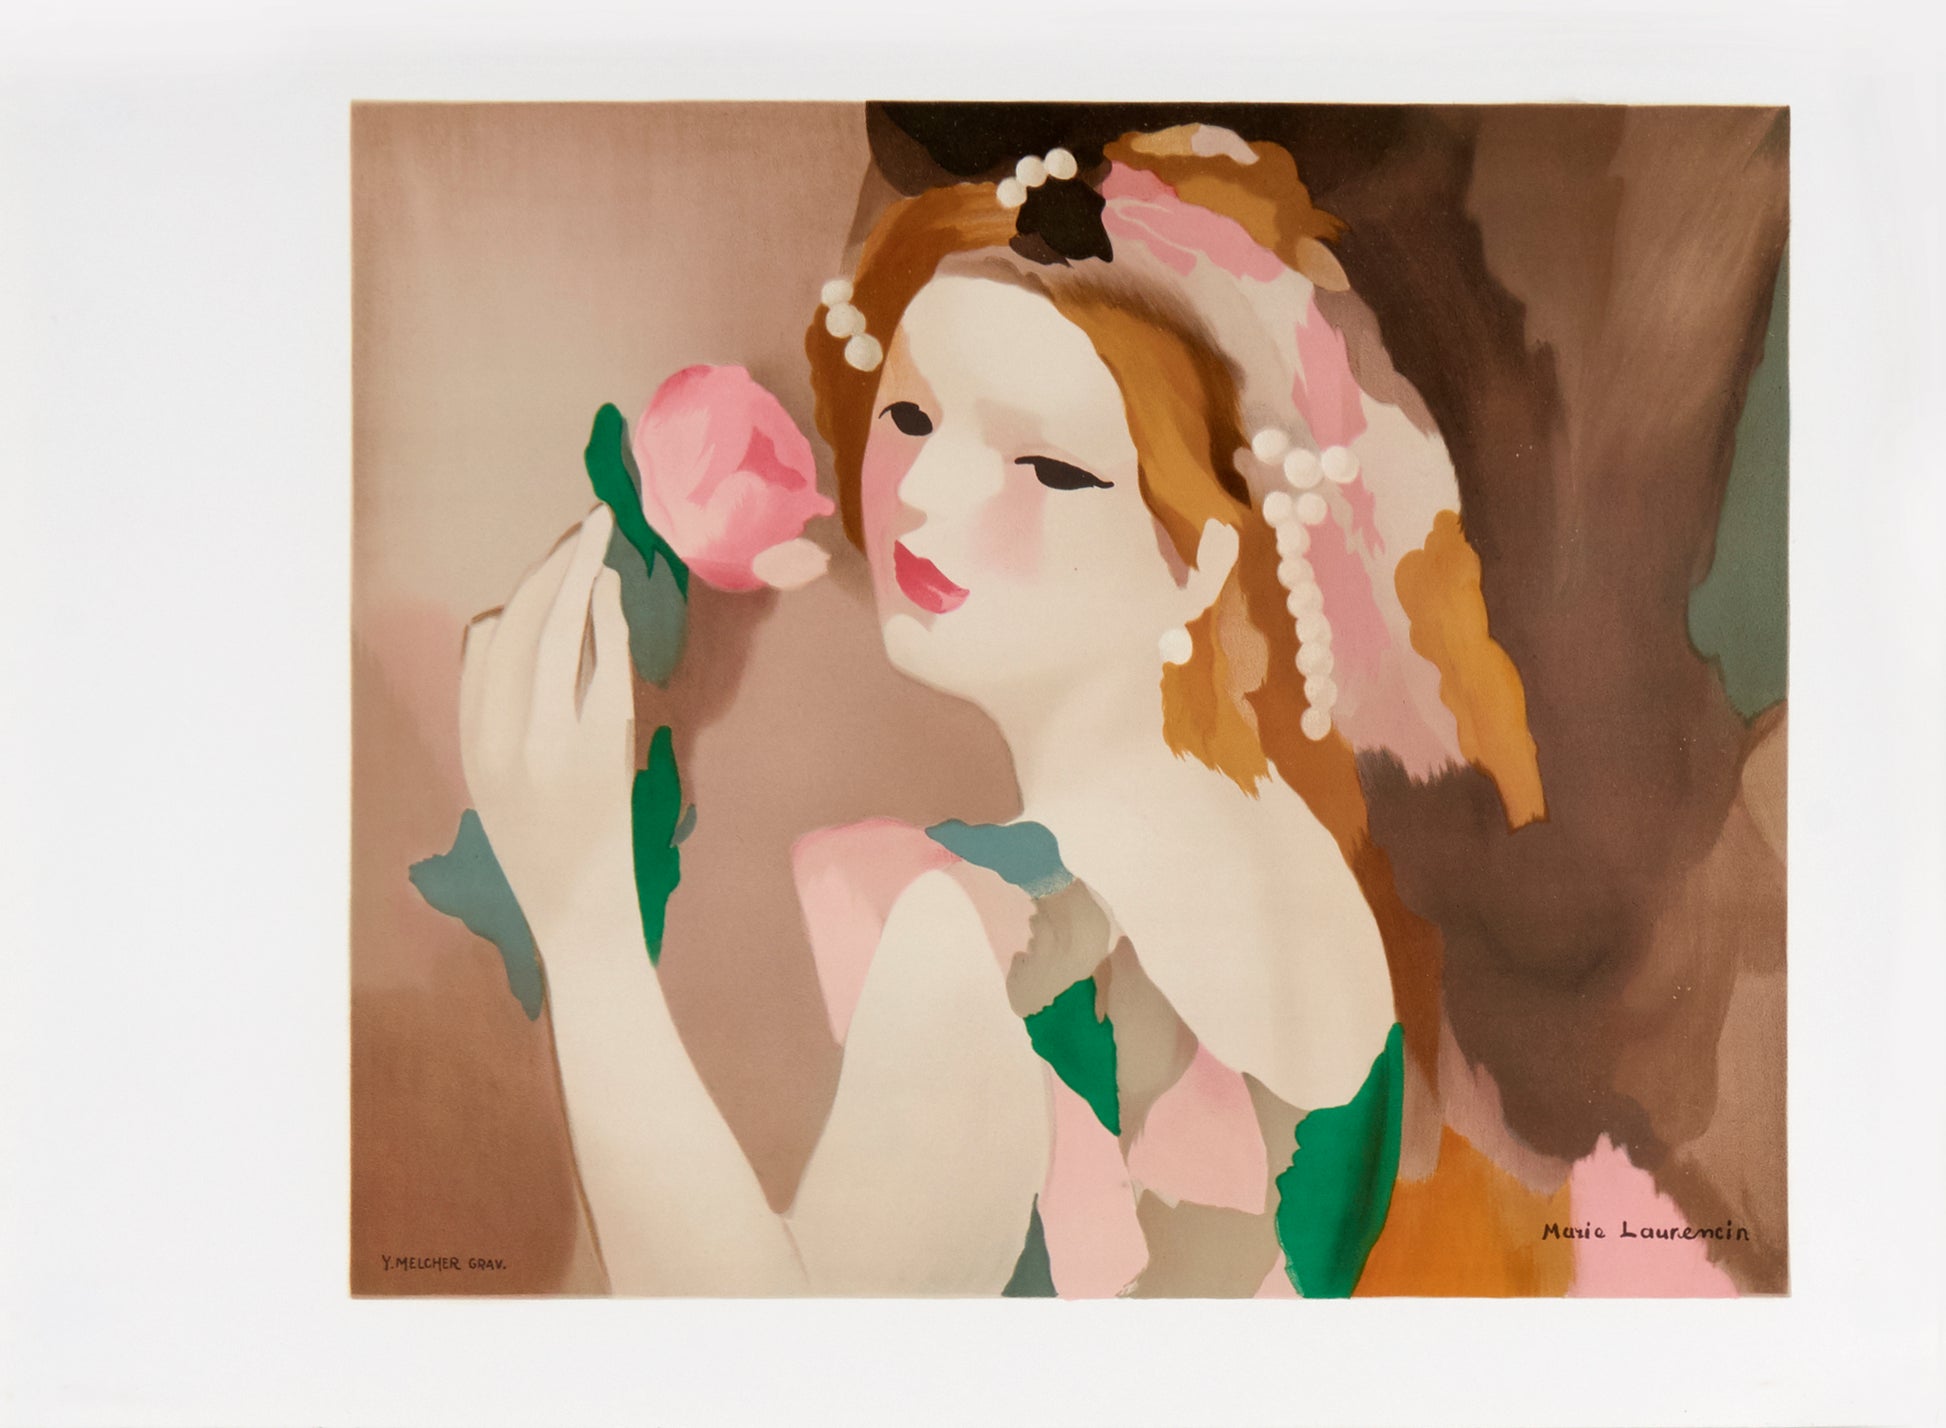 Jeune fille a la Rose (after) Marie Laurencin, 1987 - Mourlot Editions - Fine_Art - Poster - Lithograph - Wall Art - Vintage - Prints - Original